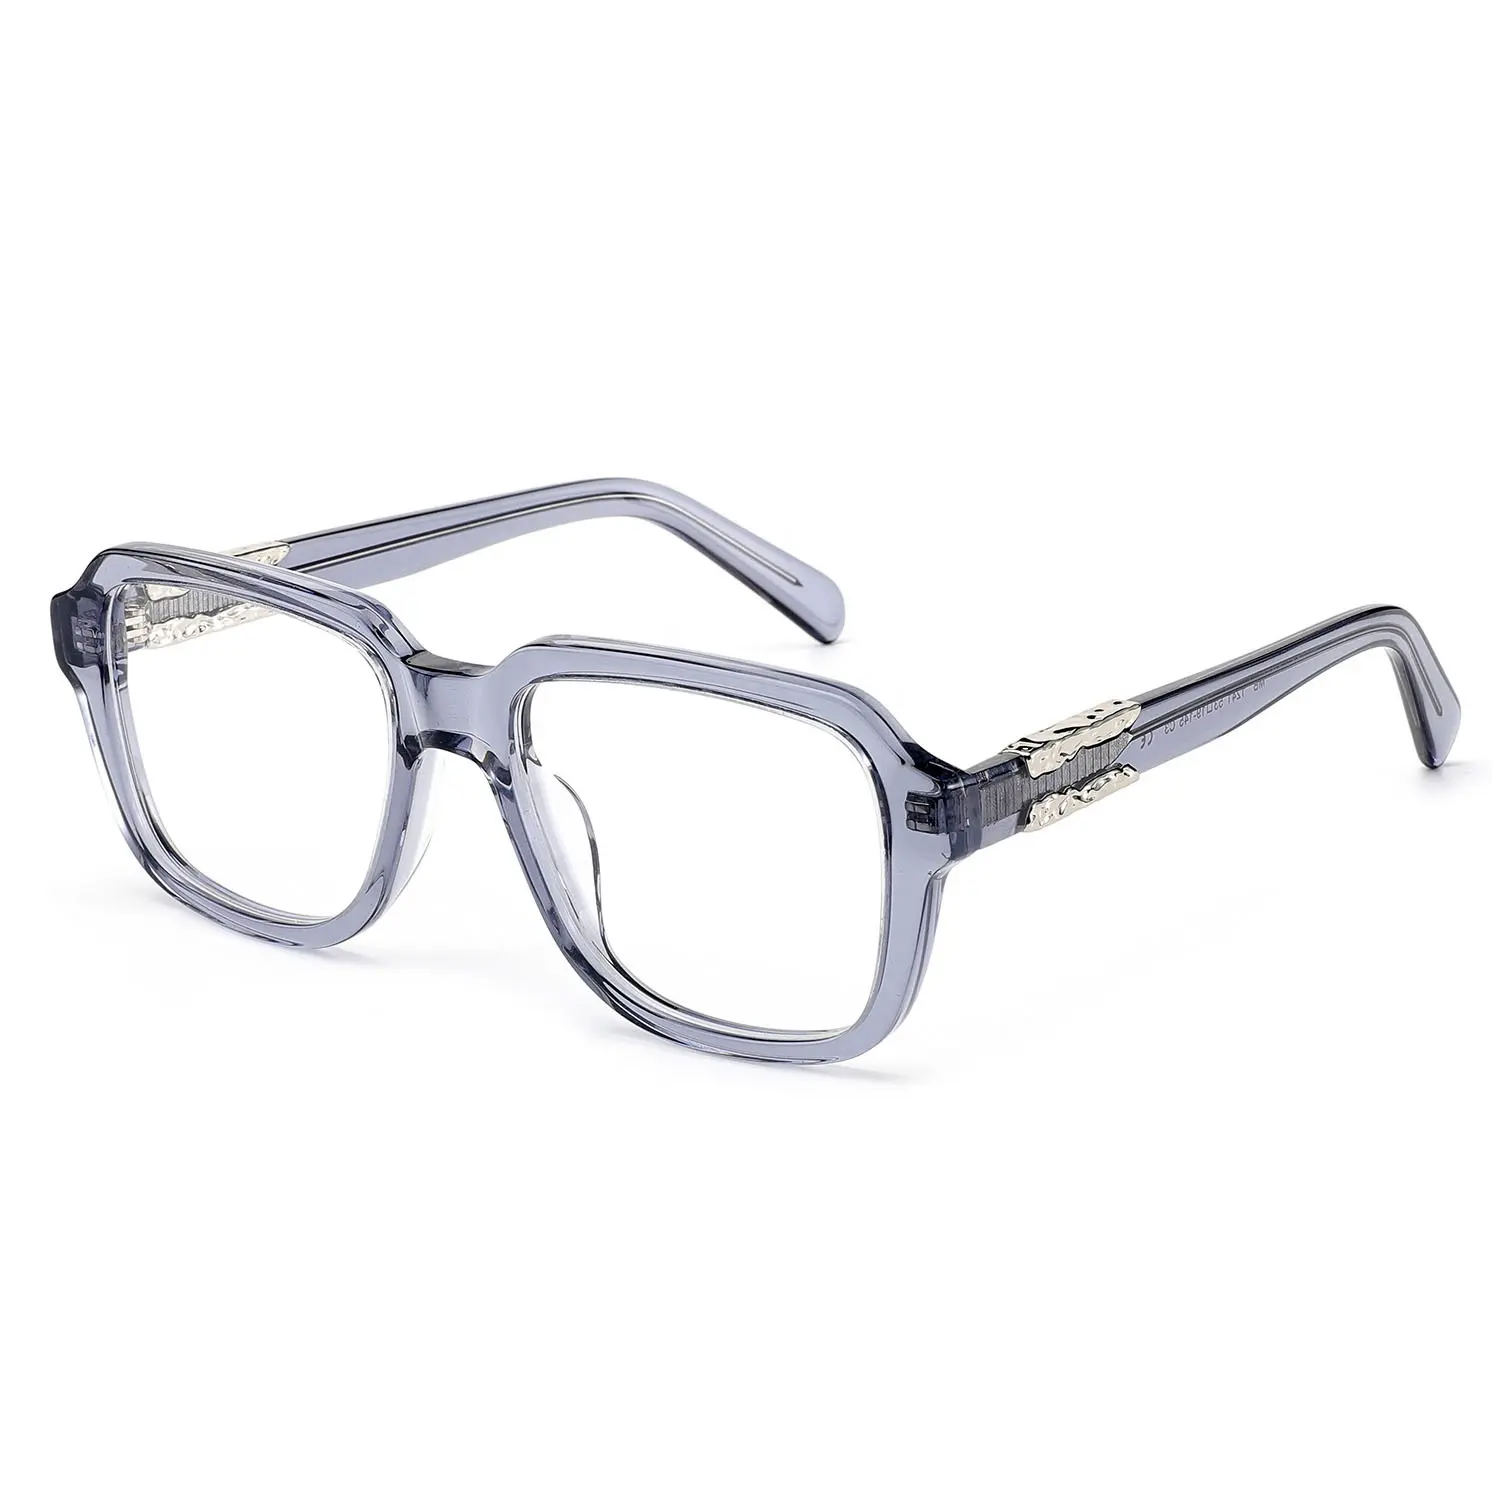 إطارات نظارات عالية الجودة من خلات الأسيتات نظارات عصرية للنساء تصميم نظارات بصرية مضادة للضوء الأزرق إطار برومو